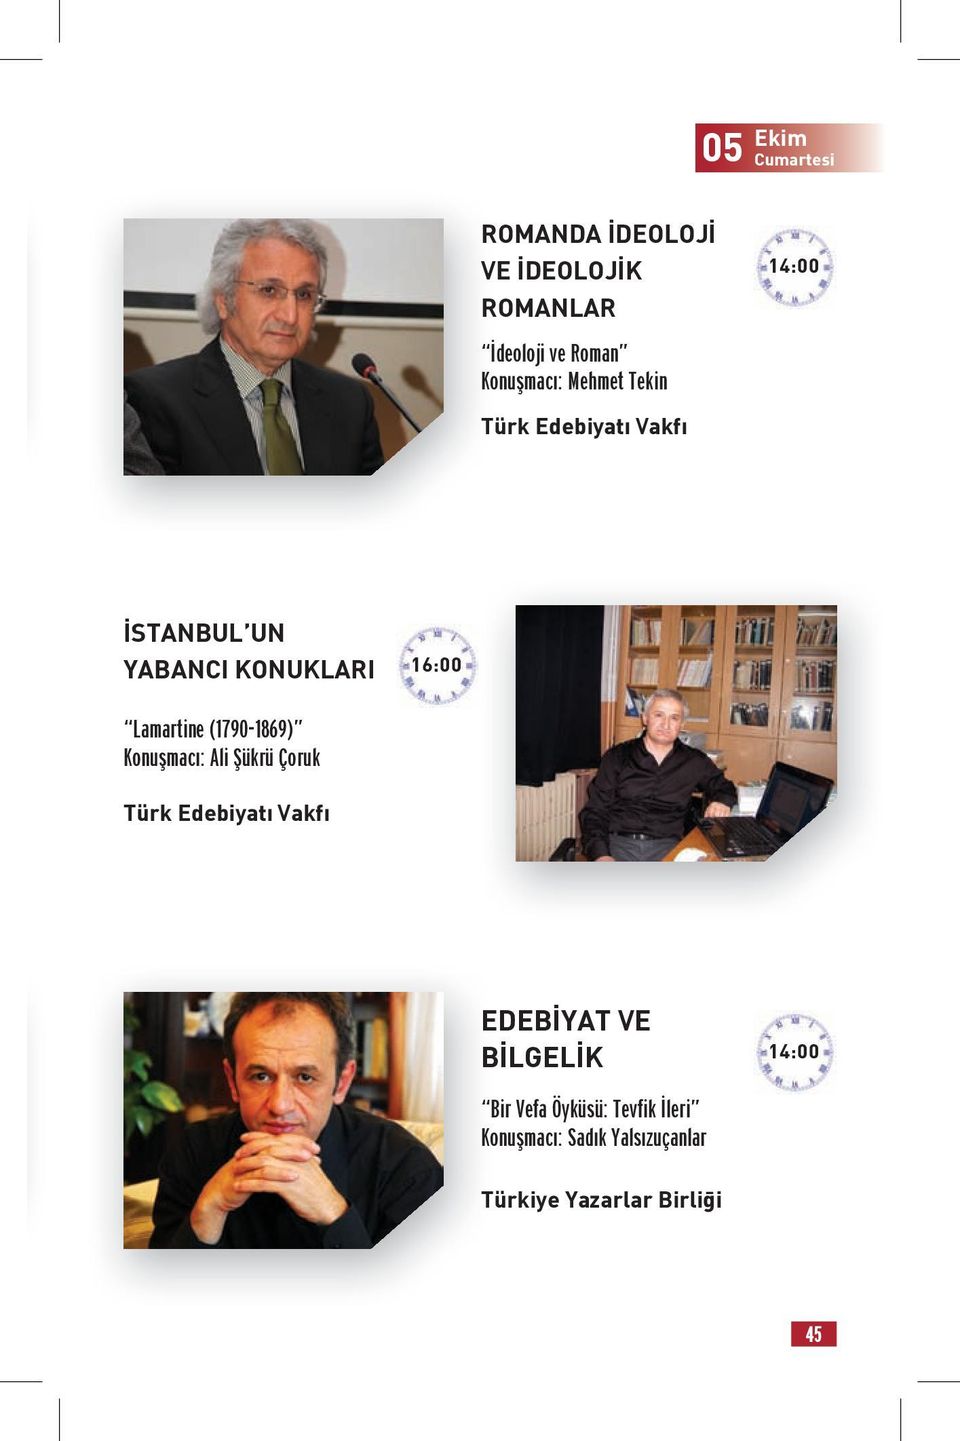 (1790-1869) Konuşmacı: Ali Şükrü Çoruk Türk Edebiyatı Vakfı EDEBİYAT VE BİLGELİK 14:00